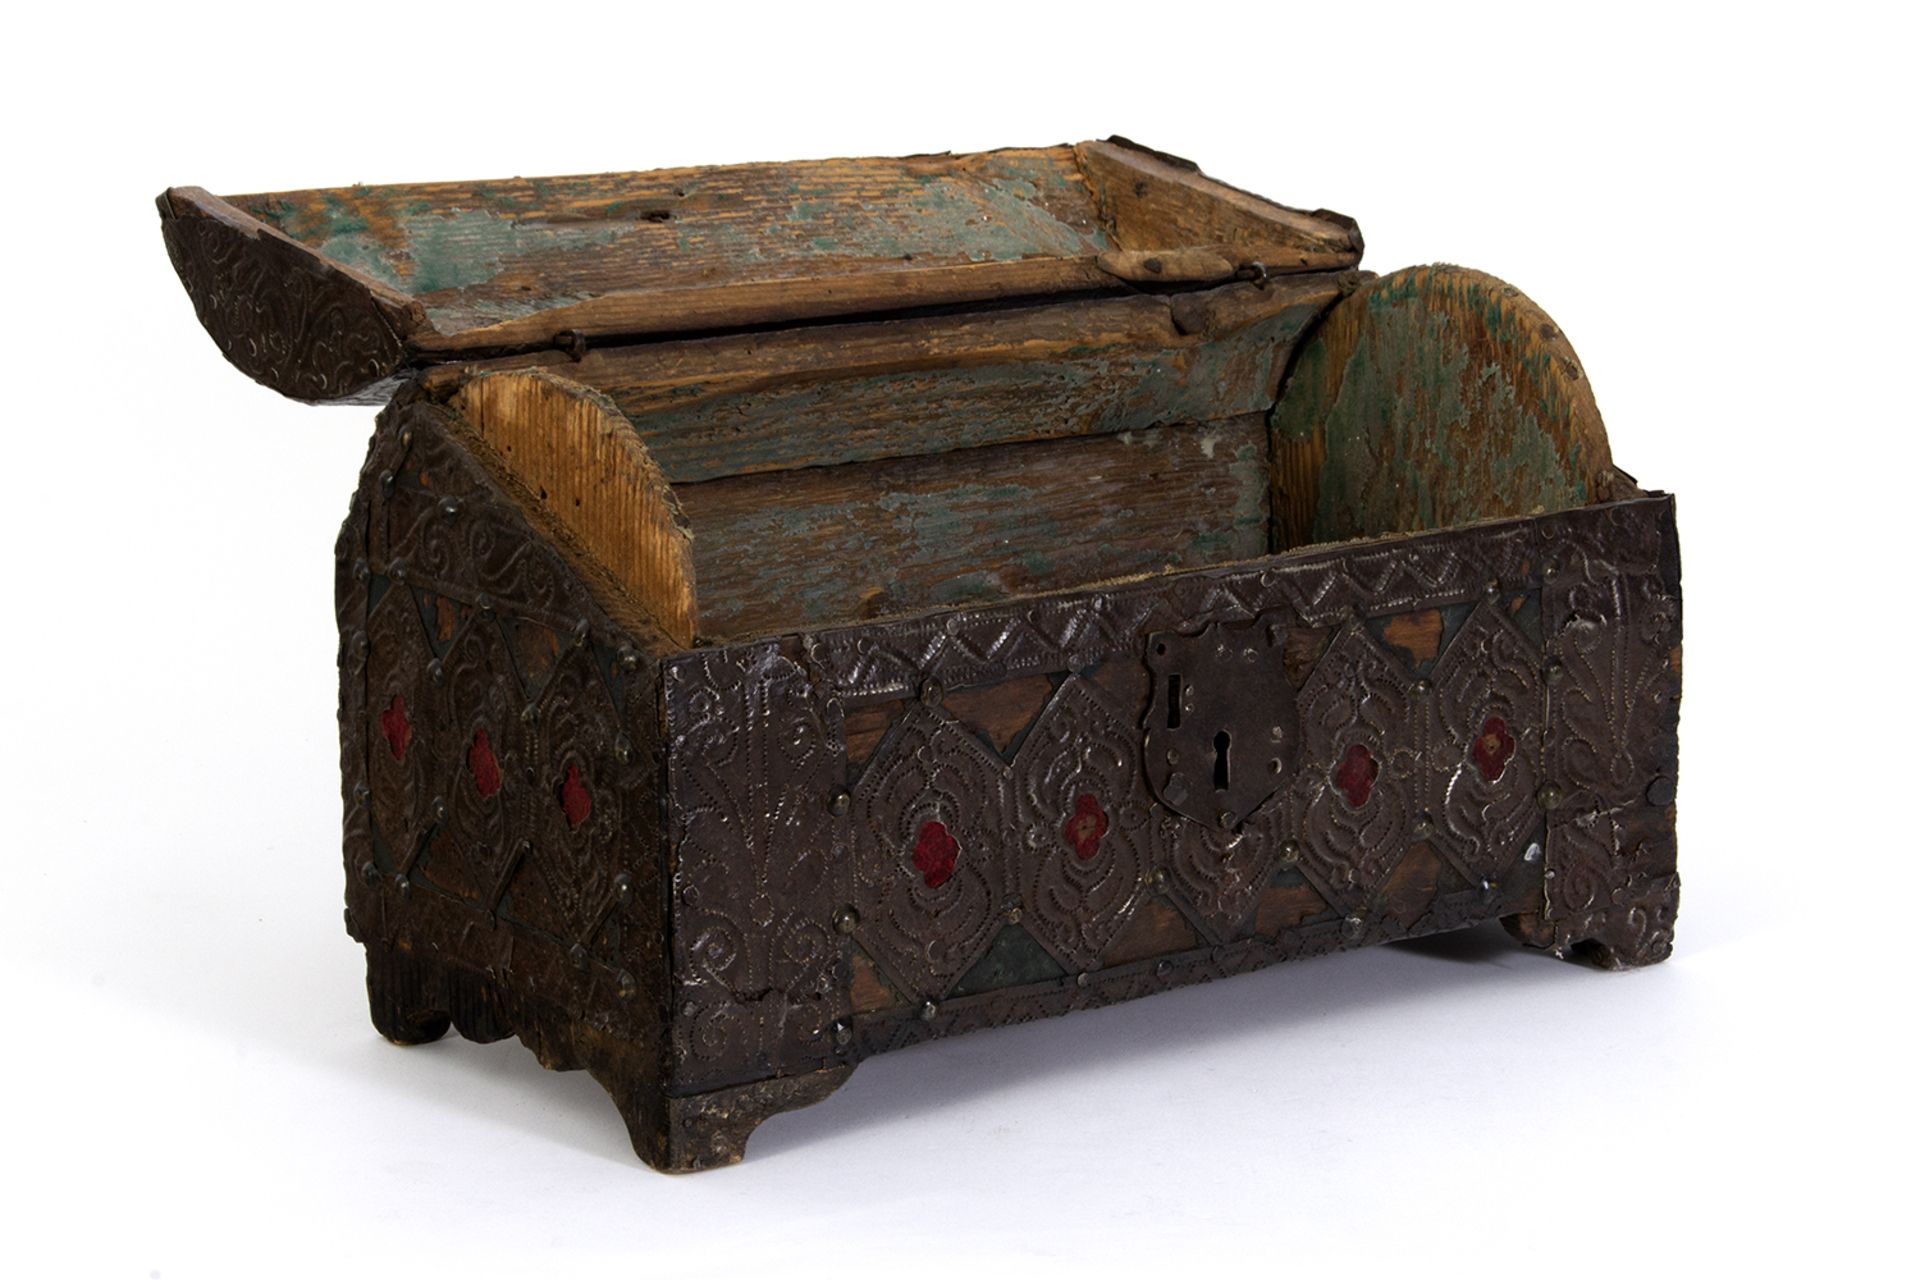 Arqueta en madera revestida de metal repujado y tela con herrajes en hierro. - Image 2 of 5